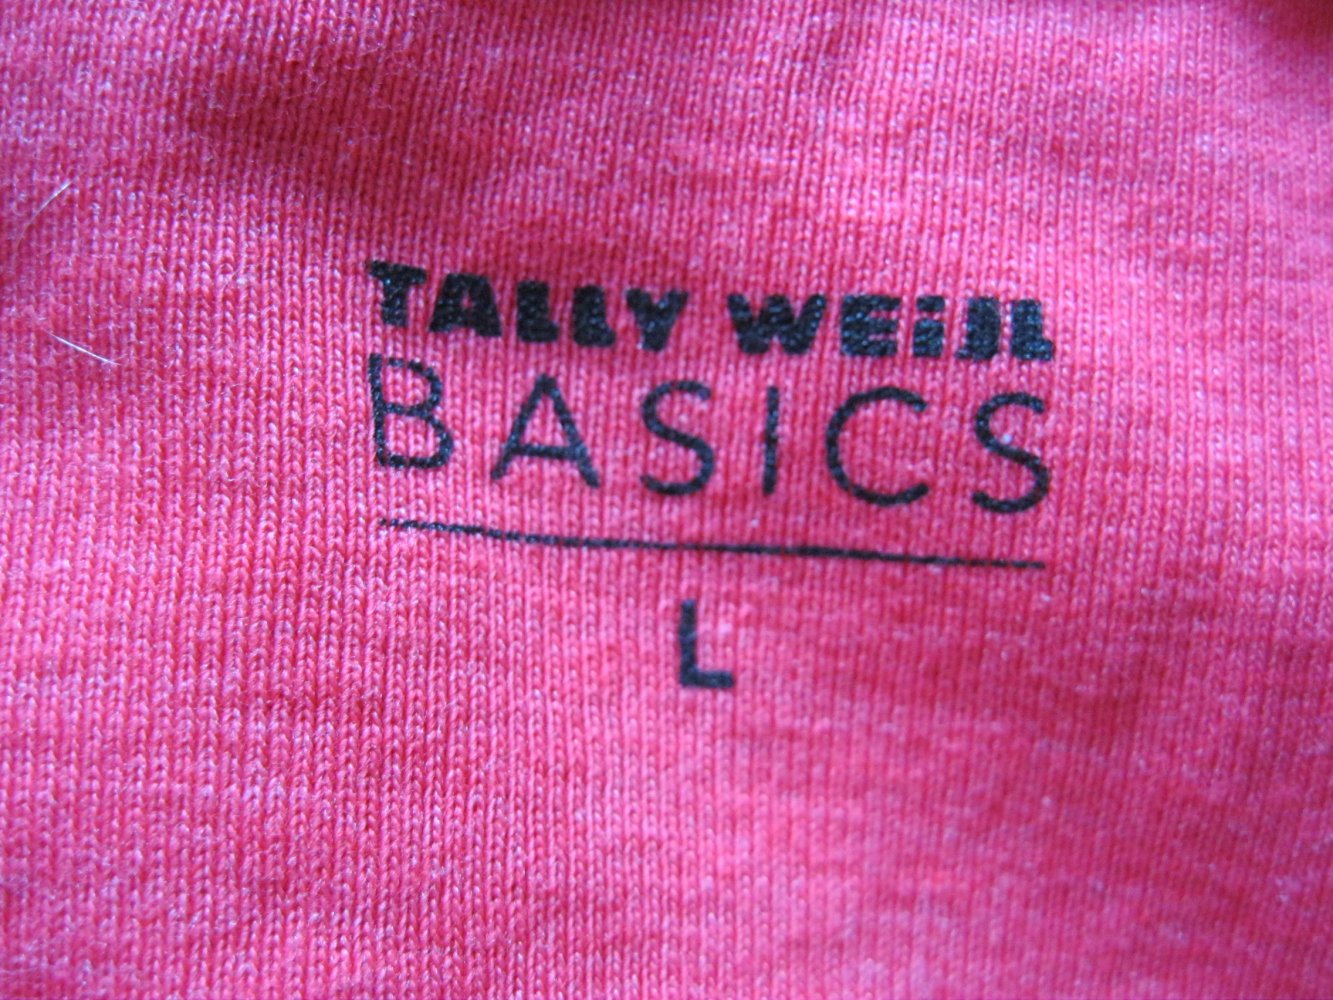 T-Shirt # Croped # Tally Weijl # 60% Baumwolle # rot # L